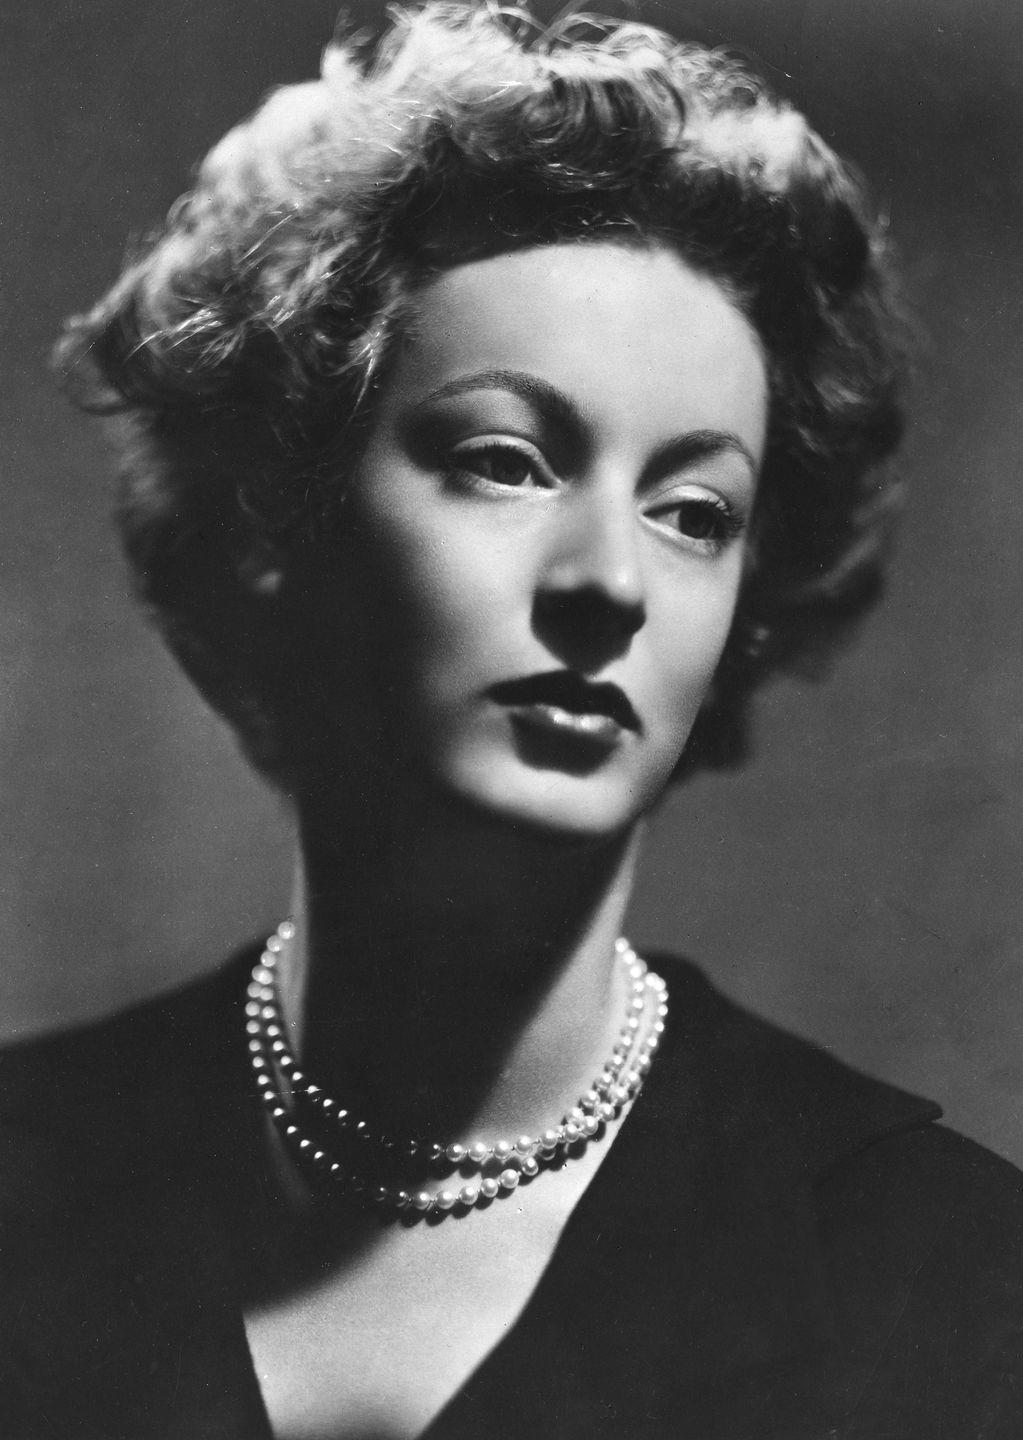 portrait of italian princess marella agnelli caracciolo of castagneto, gianni agnellis wife 1950s photo by mondadori via getty images